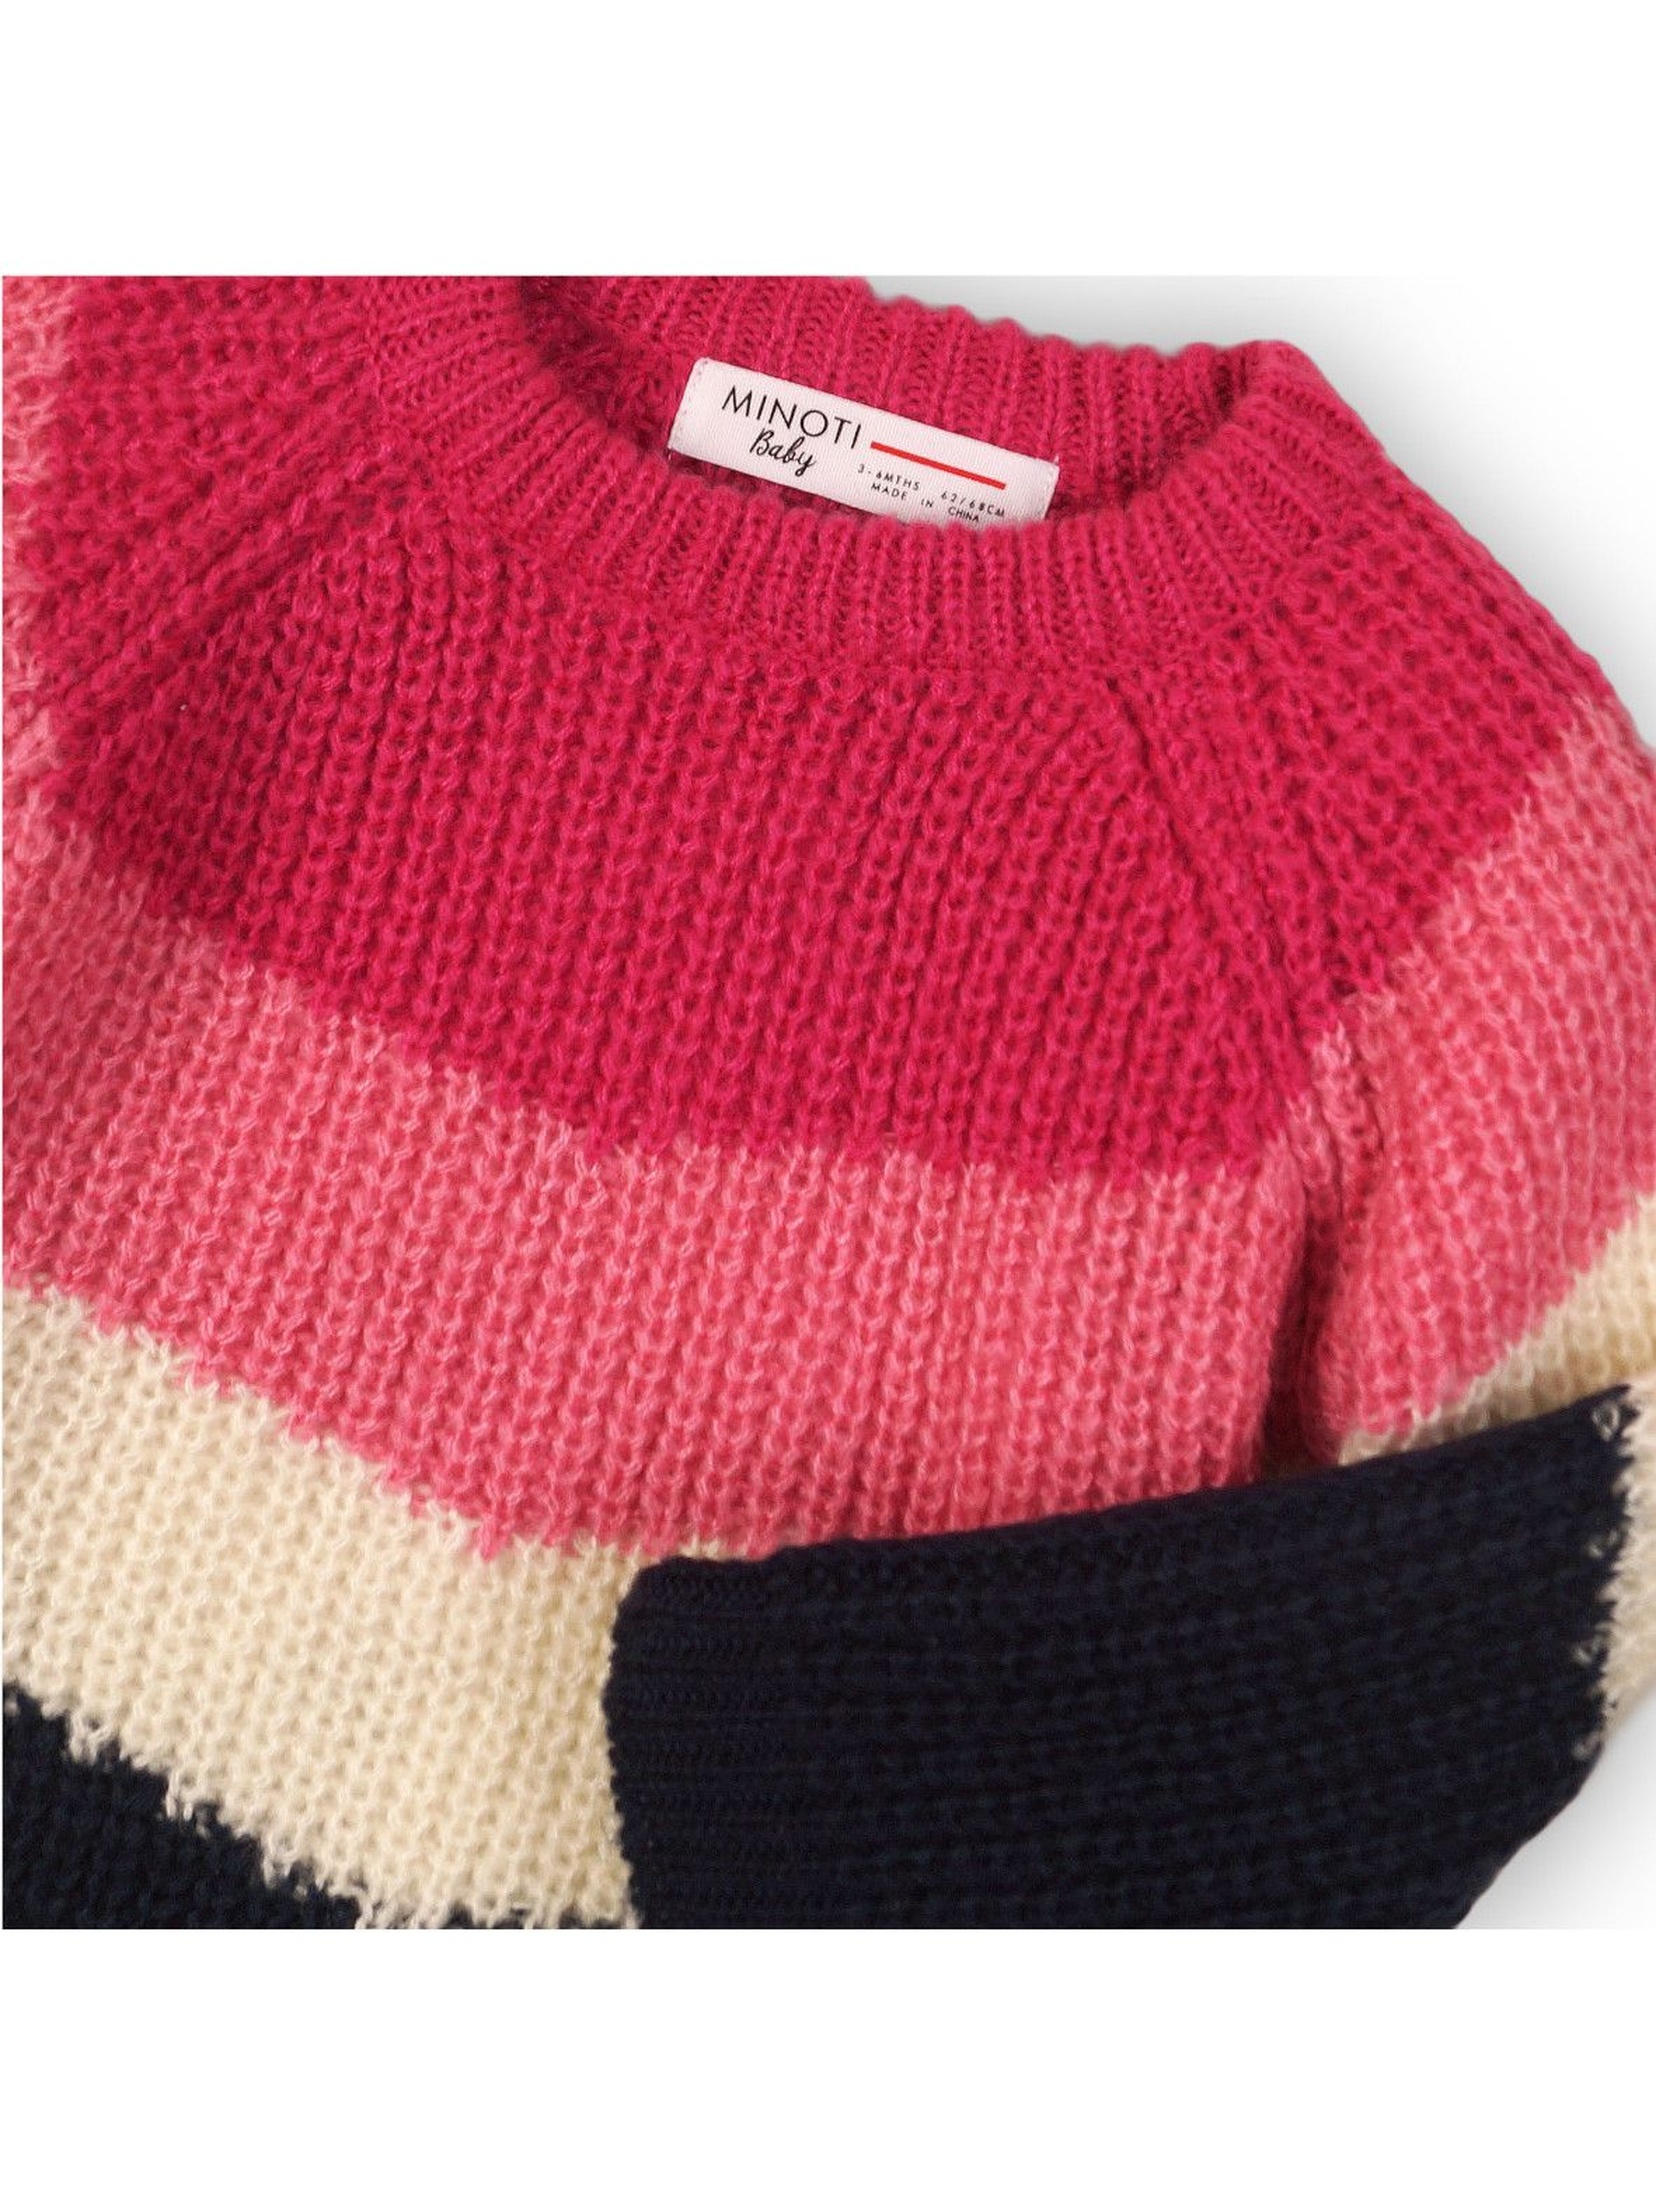 Kolorowy sweterek dla niemowlaka